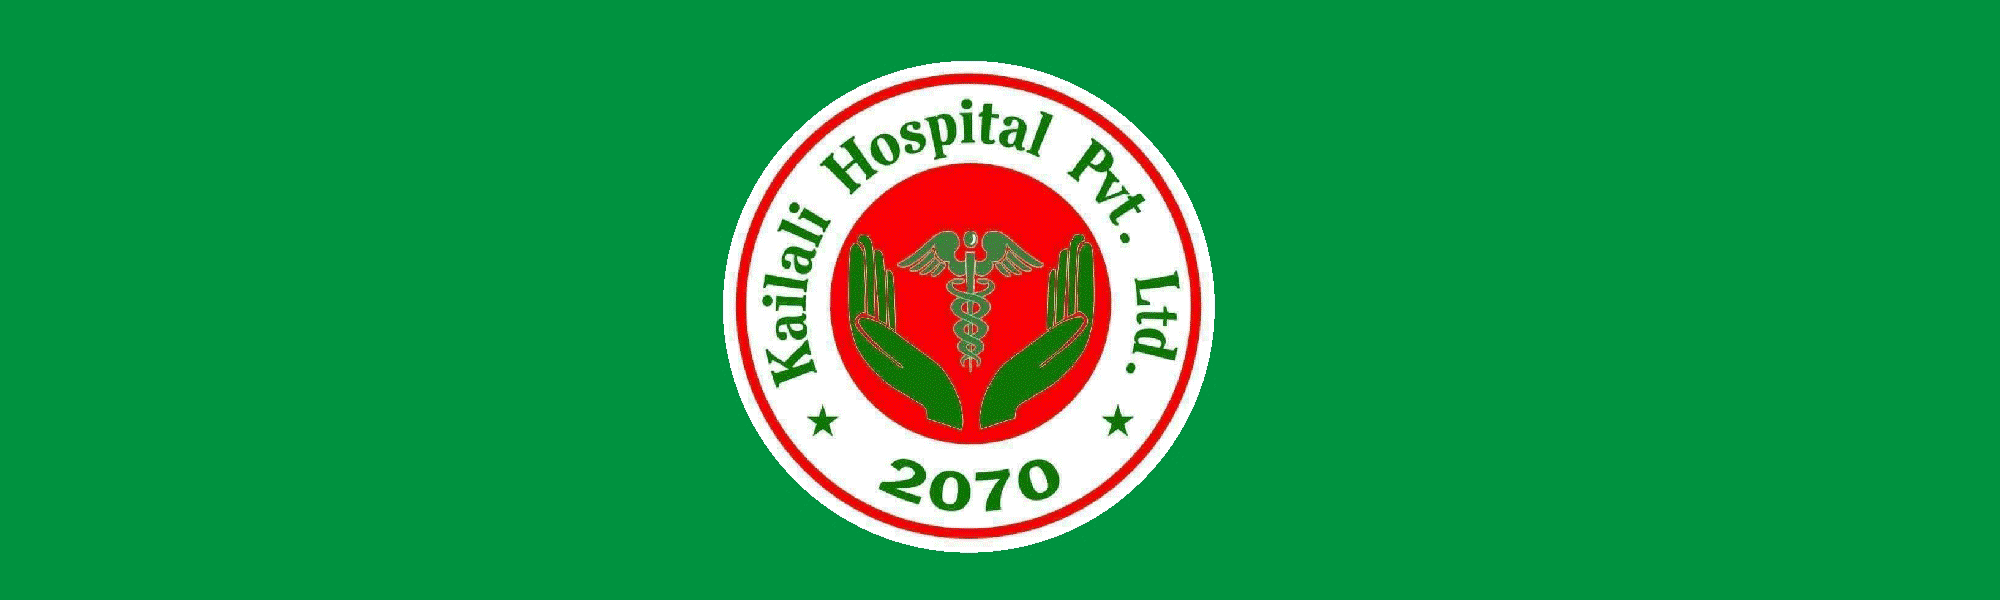 kailali hospital